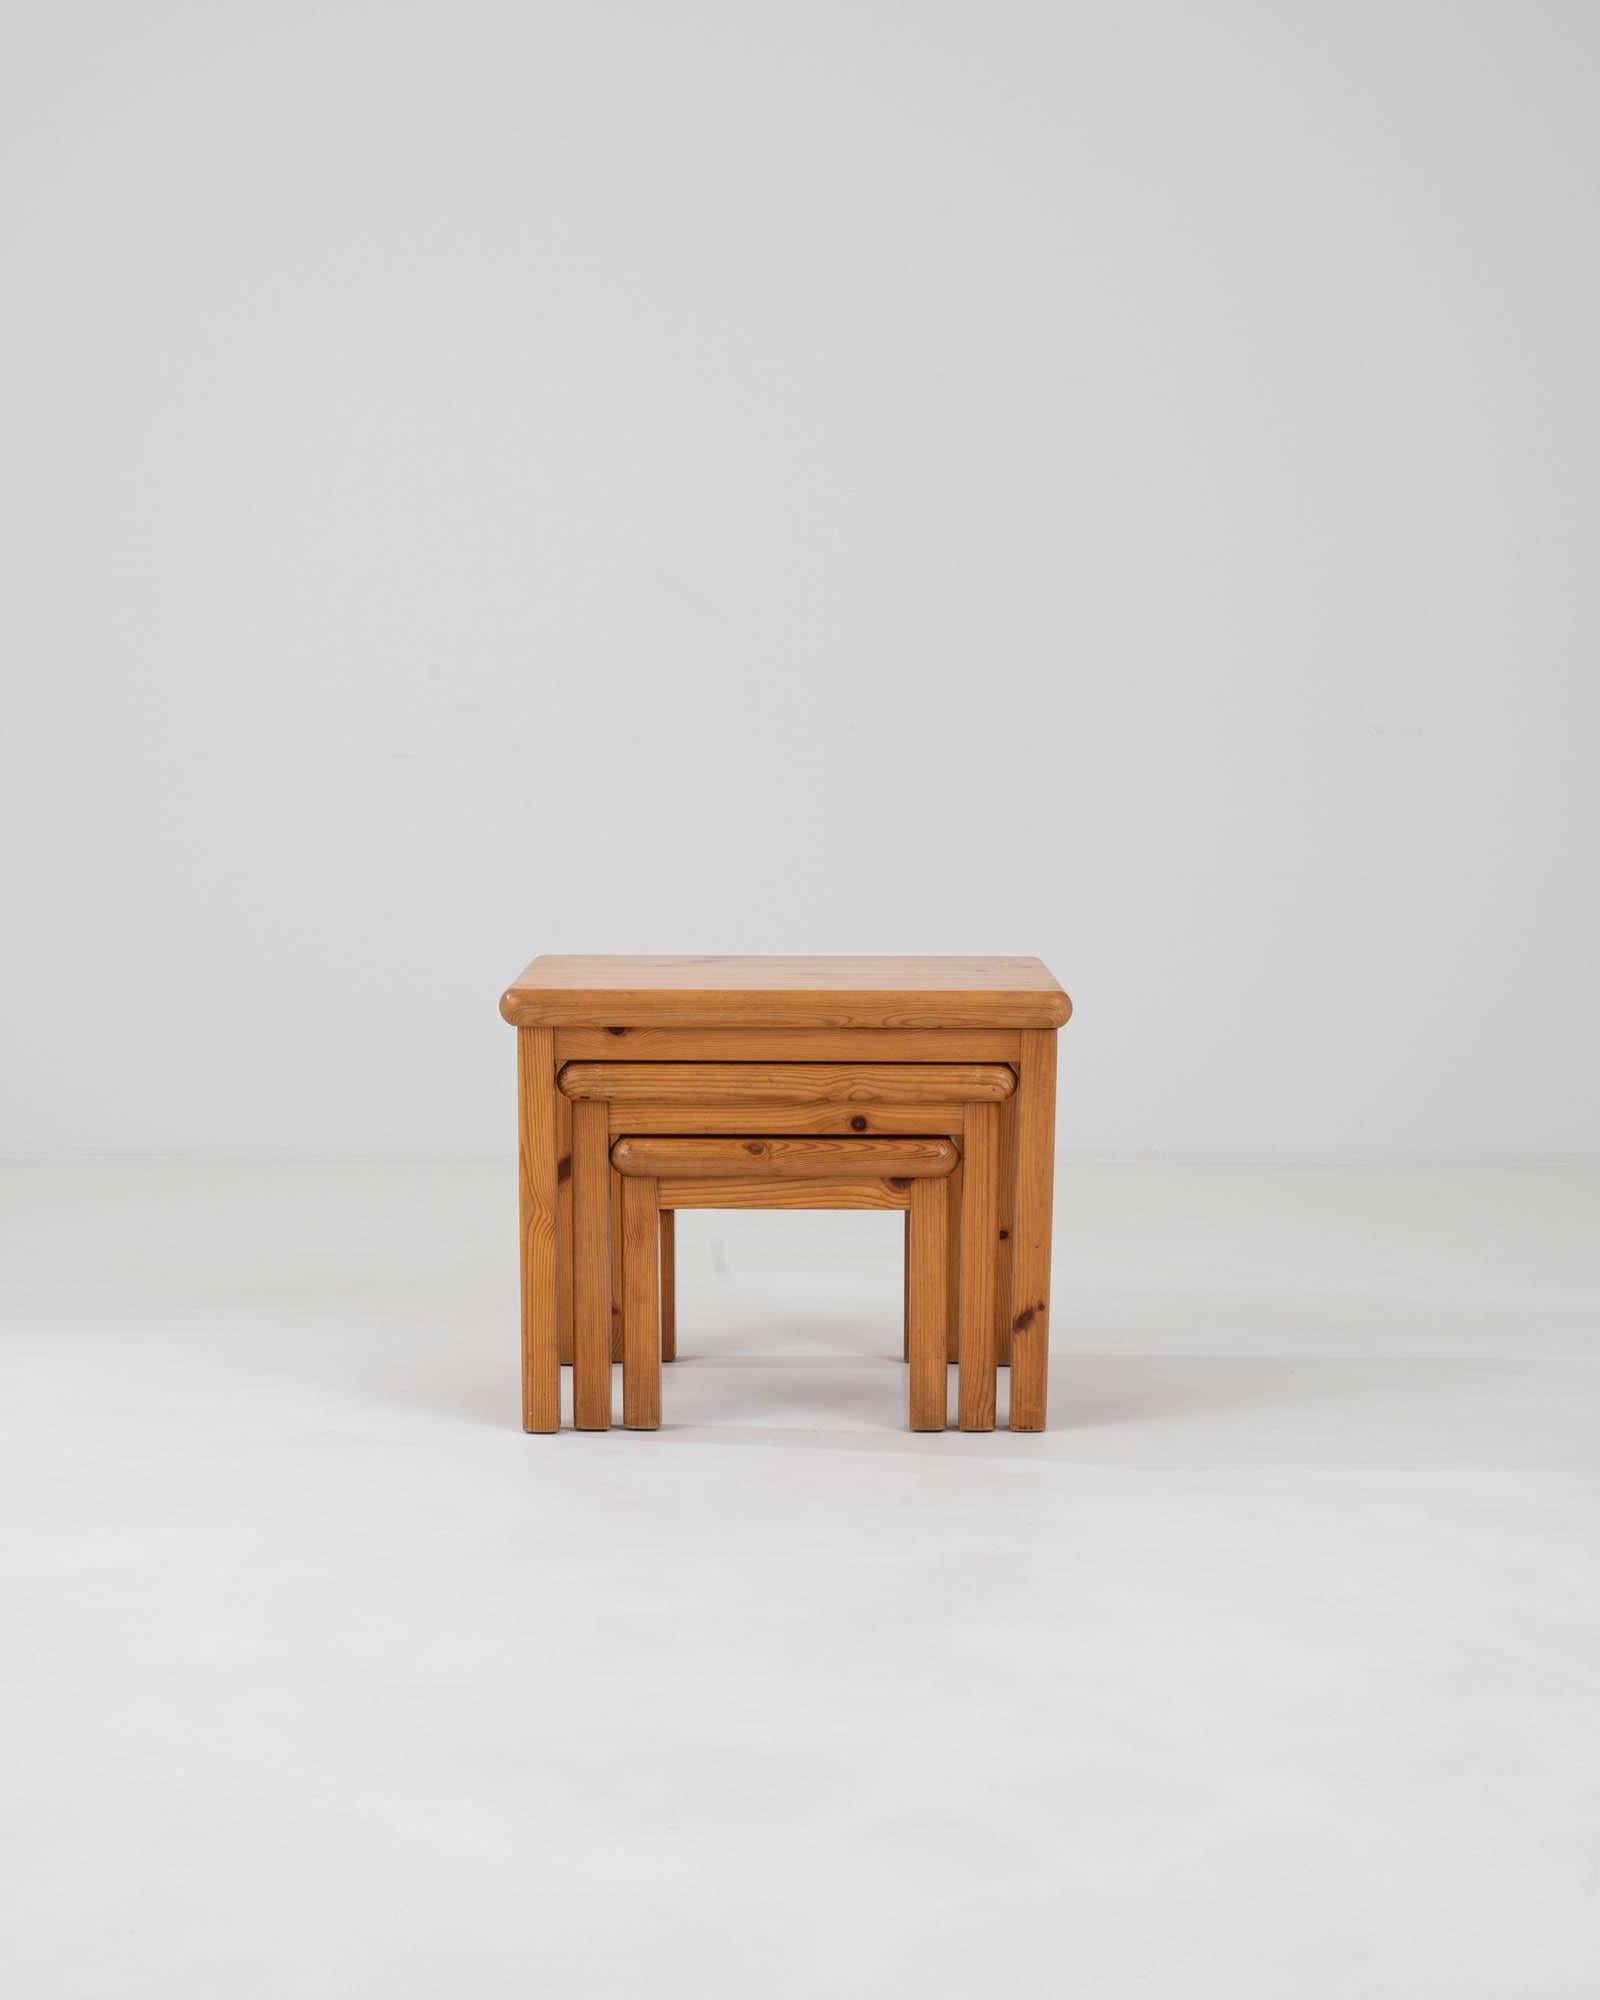 Entdecken Sie den Inbegriff des skandinavischen Designs mit diesem Set aus drei dänischen Holztischen des 20. Jahrhunderts. Jeder Tisch ist ein Zeugnis der zeitlosen Anziehungskraft des dänischen Minimalismus, mit klaren Linien und einer warmen,